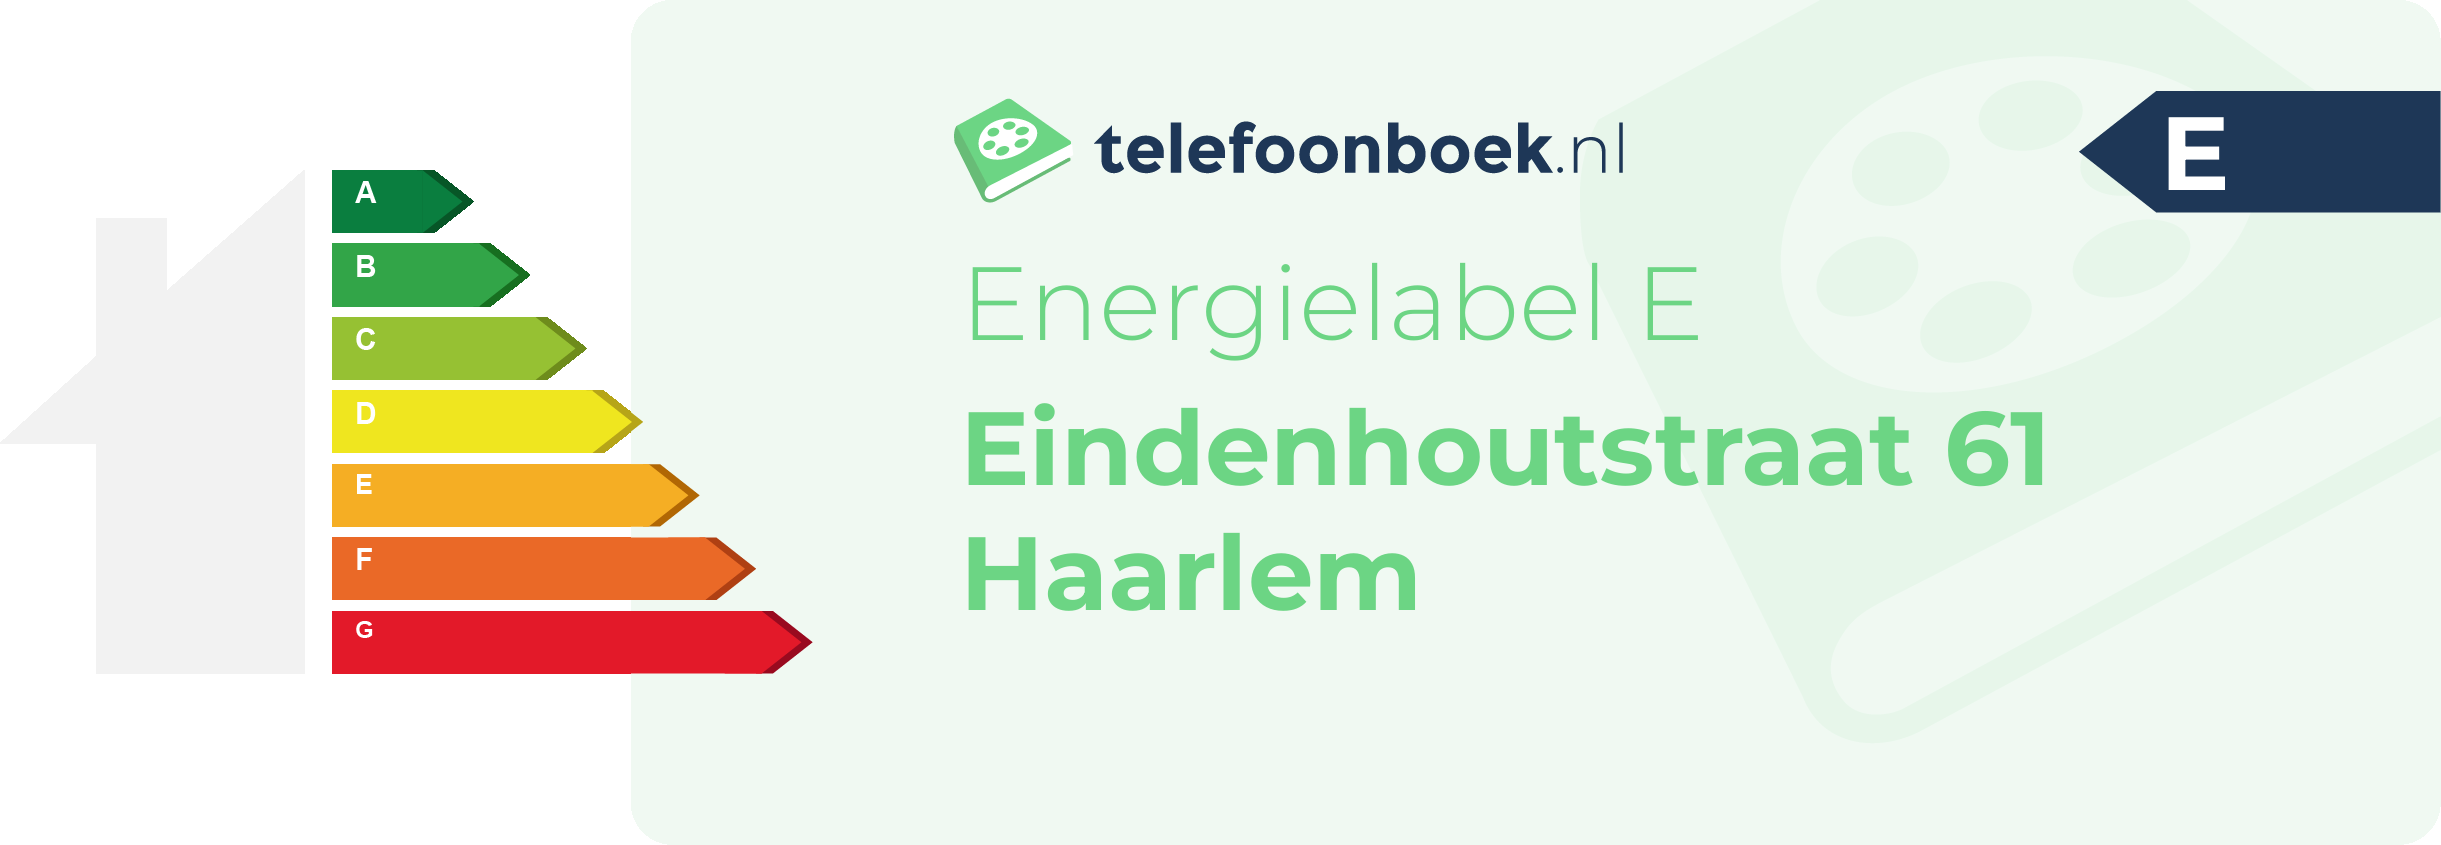 Energielabel Eindenhoutstraat 61 Haarlem